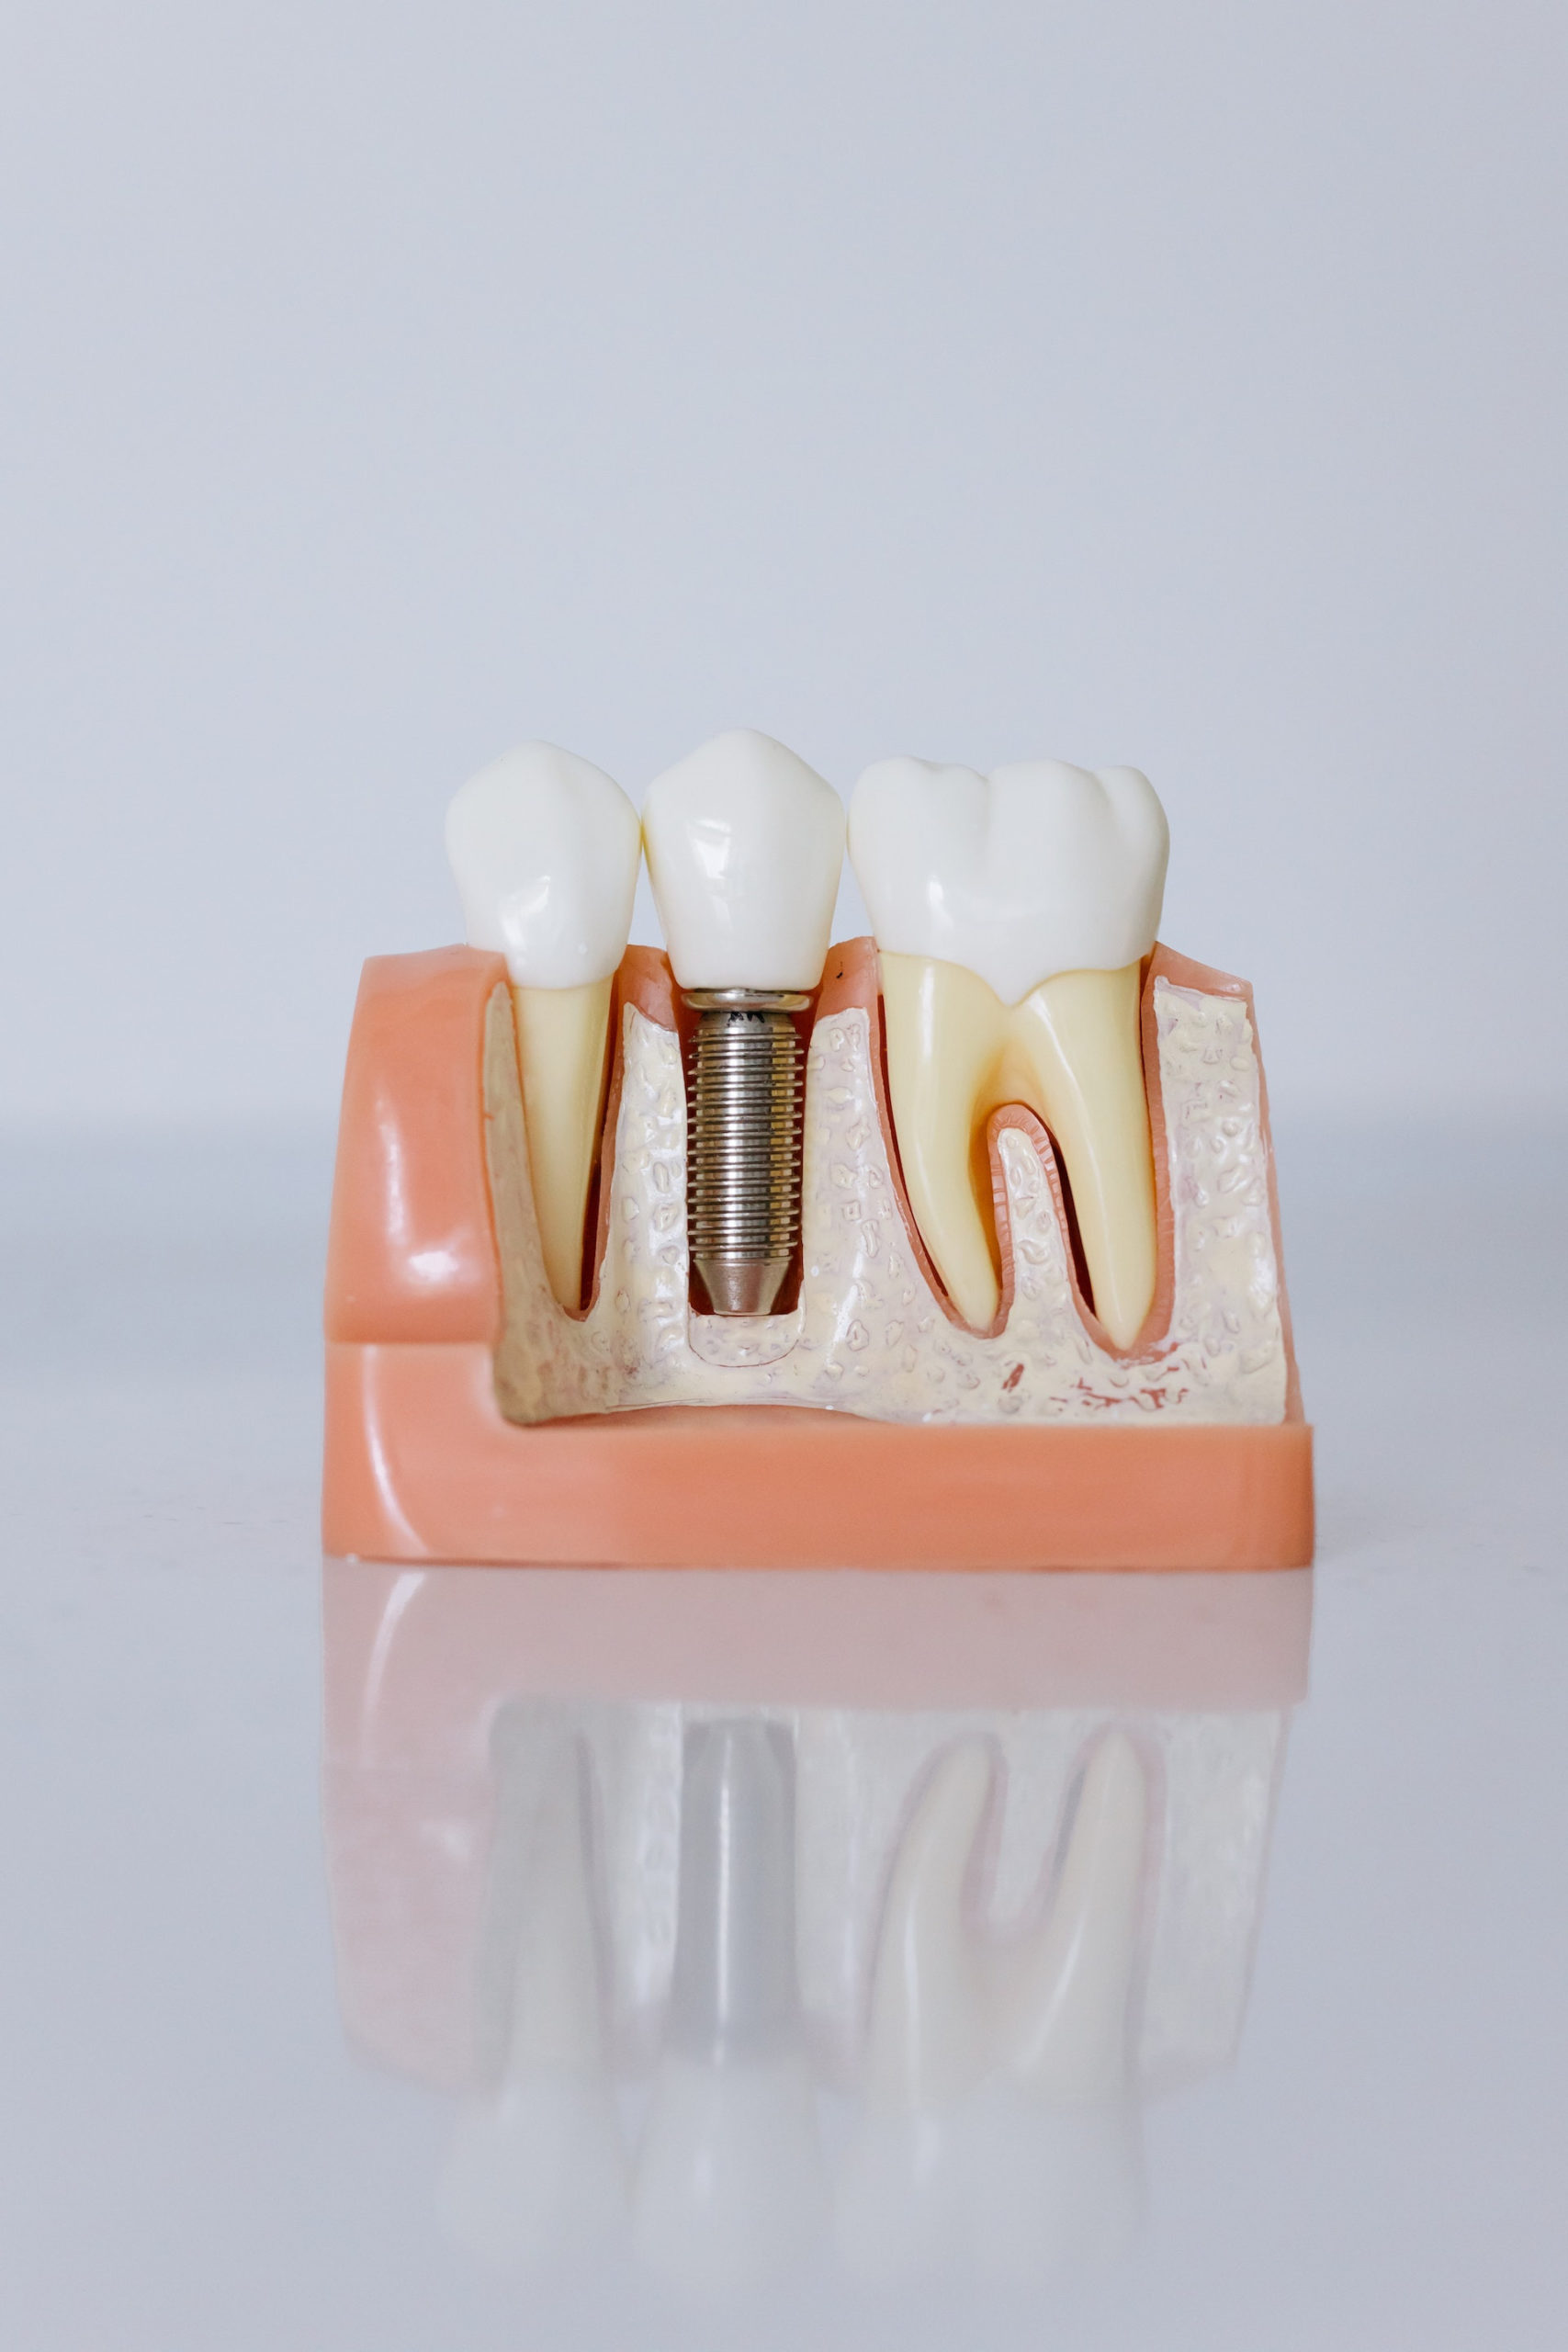 Qué son los implantes dentales y sus beneficios